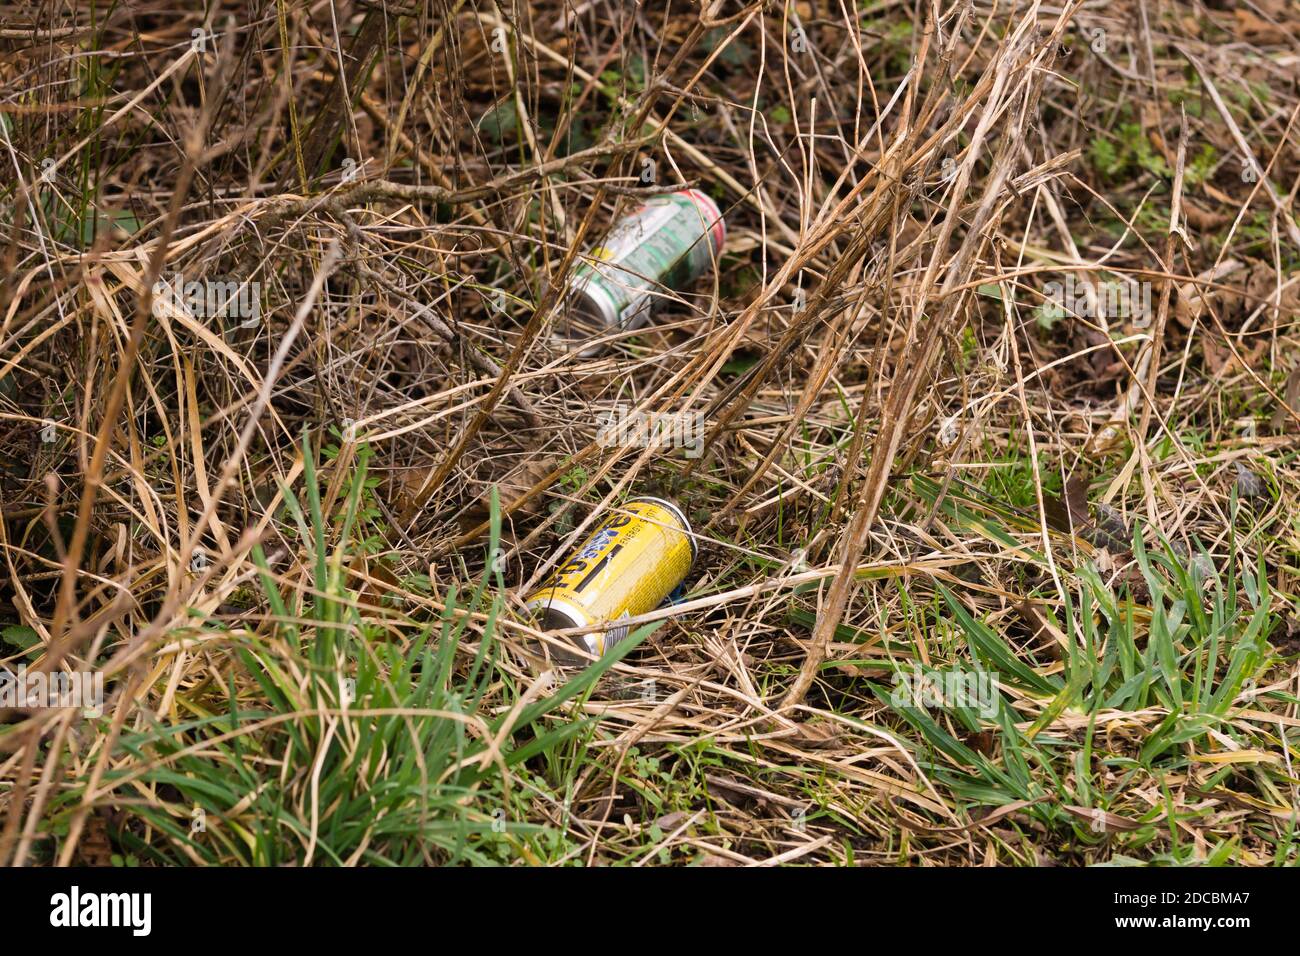 Ausrangierte Getränkedosen, die auf einer Landstraße in der abgelassen wurden Das Vereinigte Königreich ist ein Beispiel für die unvorsichtige Entsorgung von Lebensmittelabfällen Stockfoto